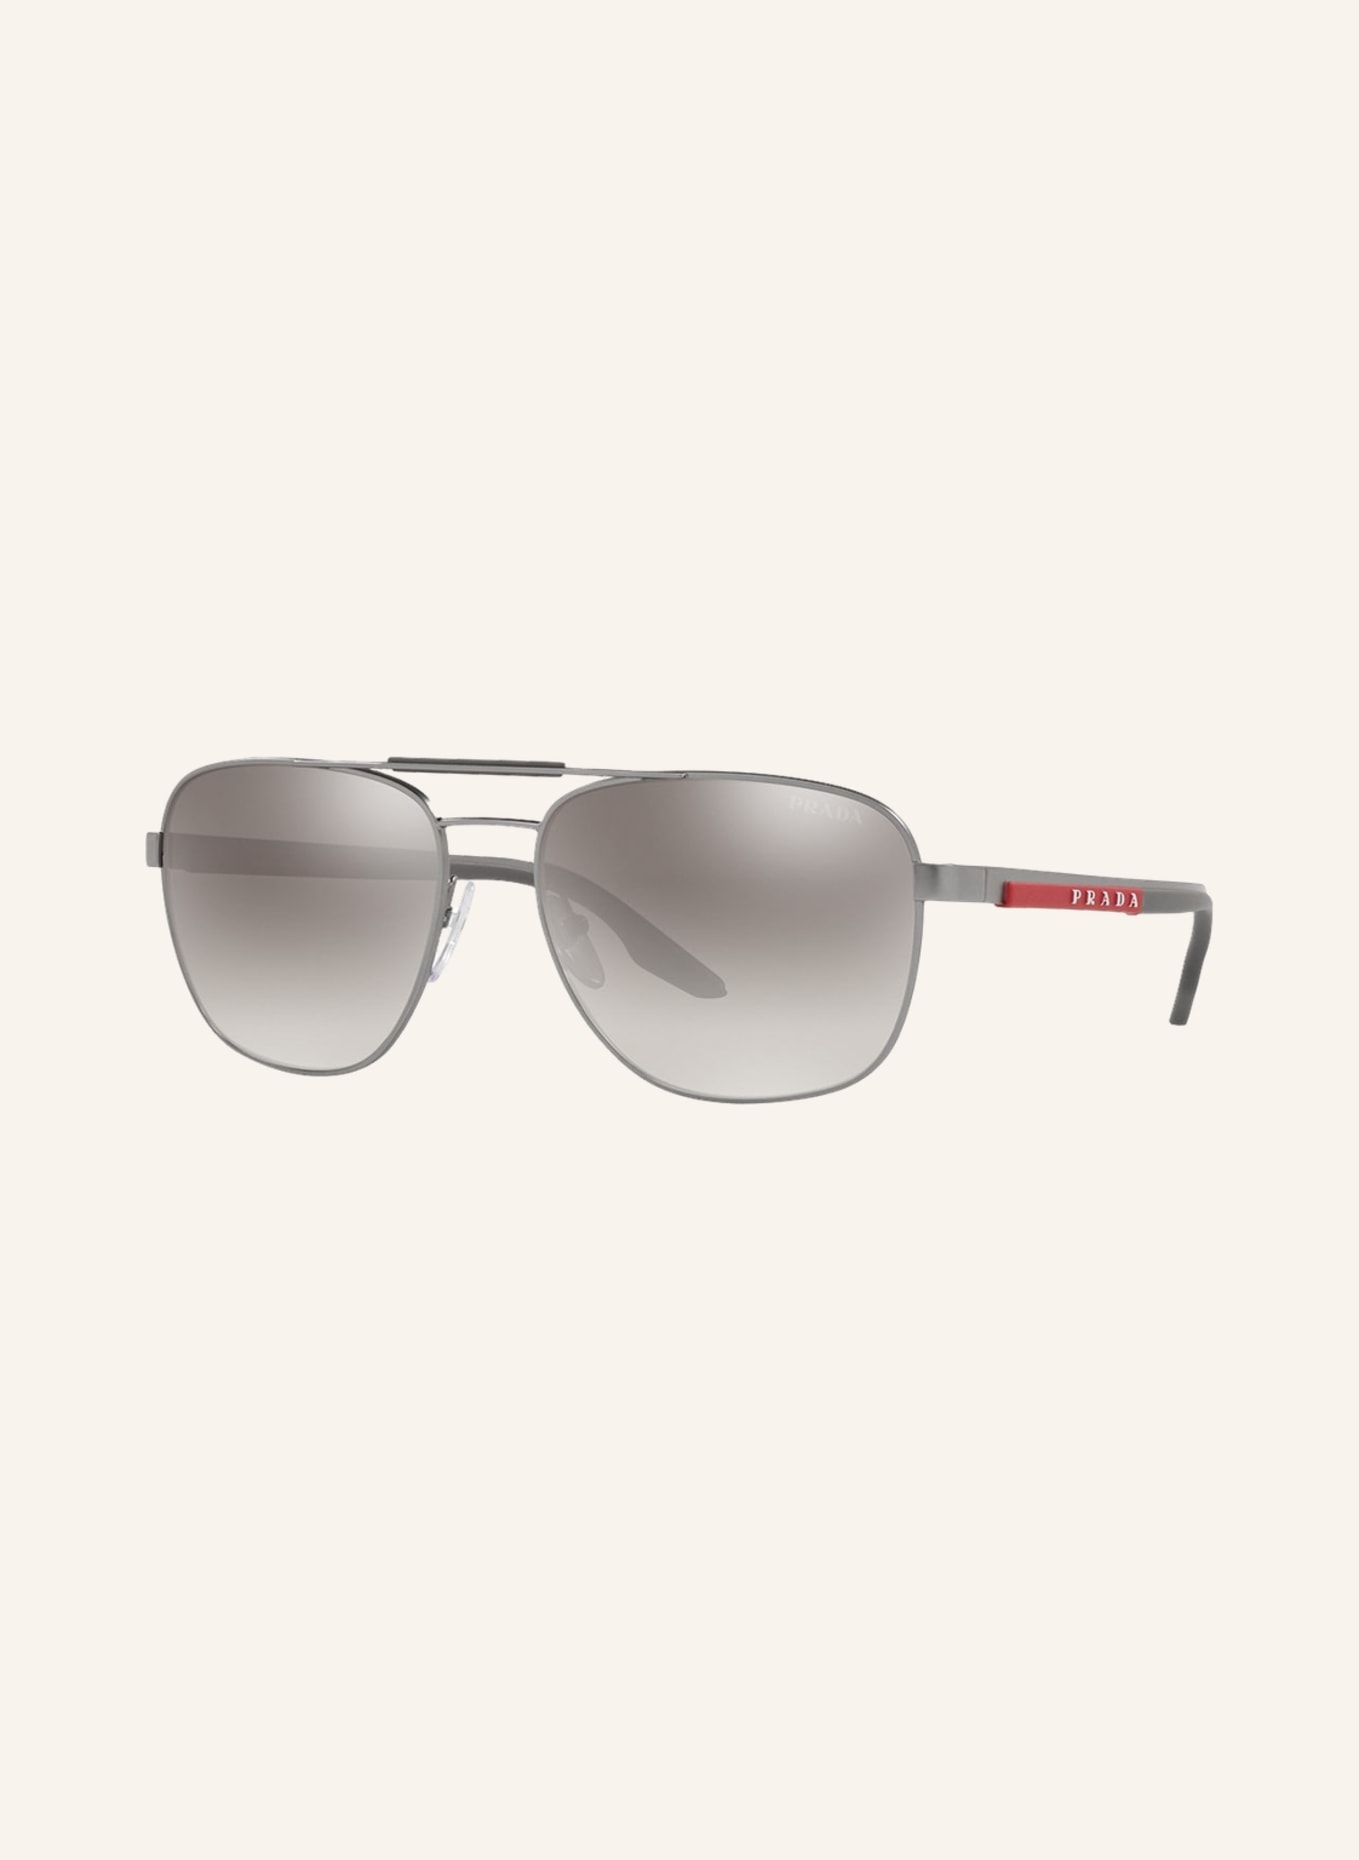 PRADA LINEA ROSSA Sunglasses PS 53XS, Color: 7CQ02M - SILVER/GRAY GRADIENT (Image 1)